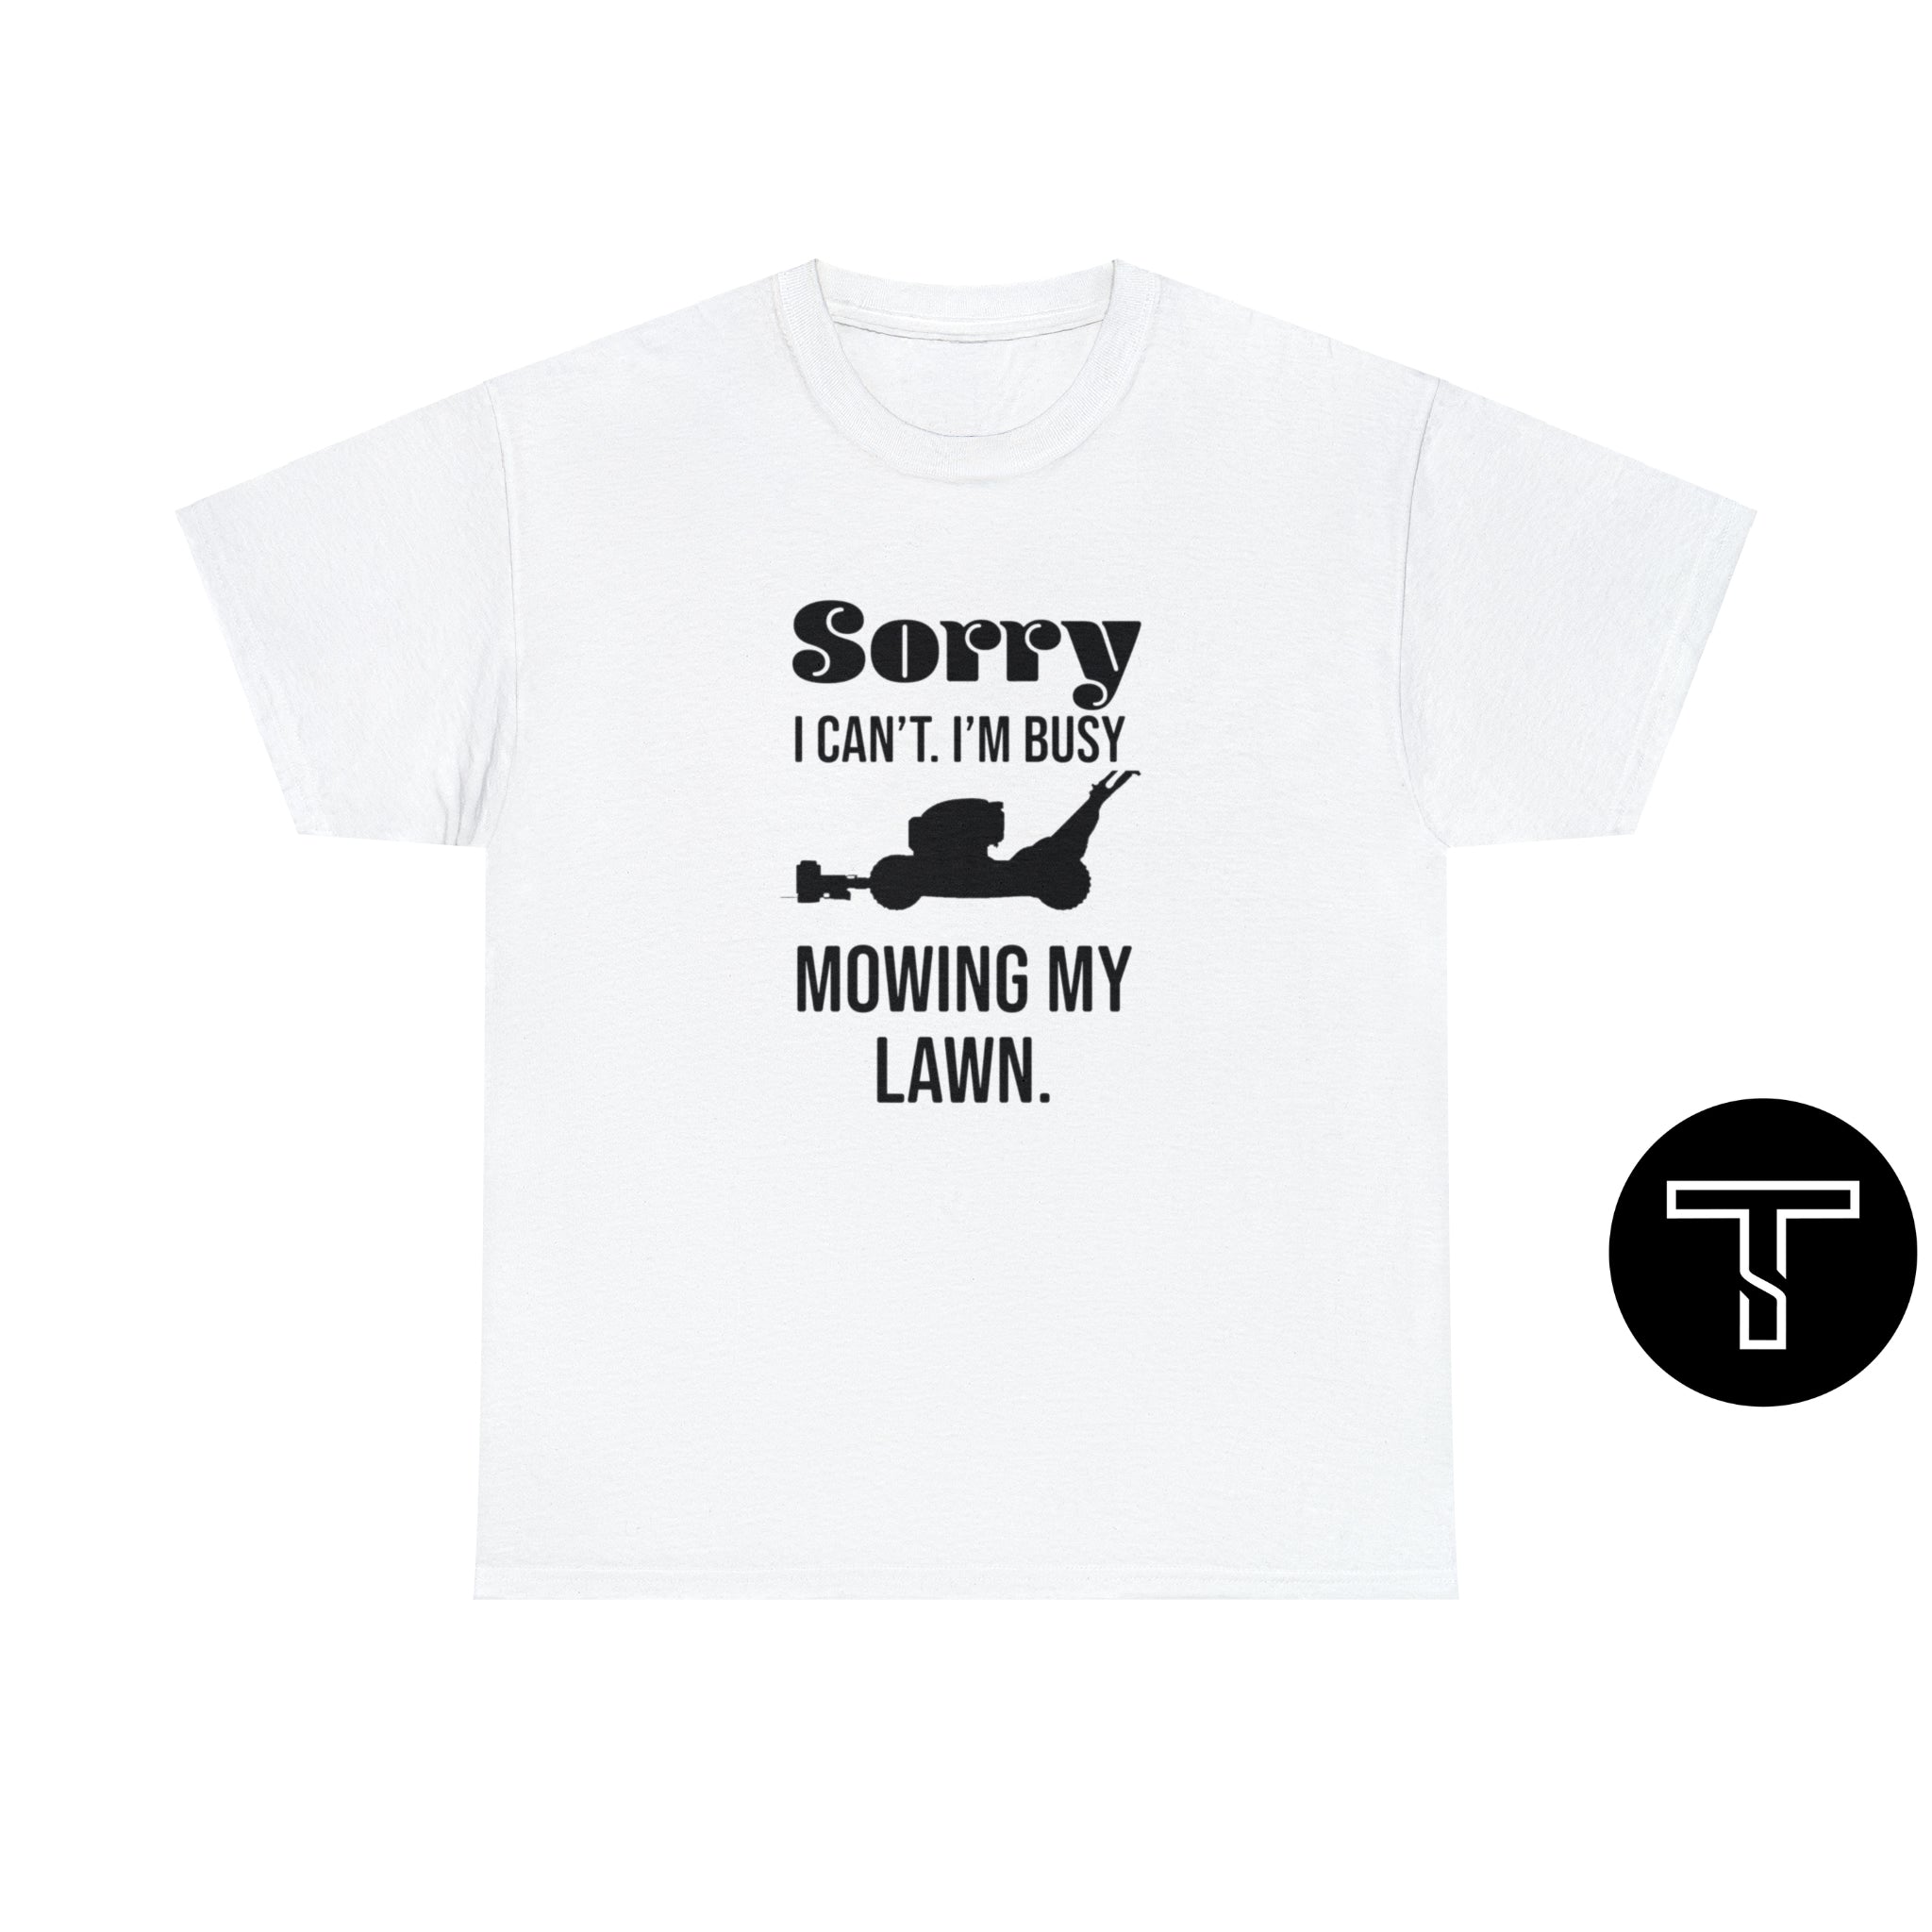 Sorry... - Trimyxs